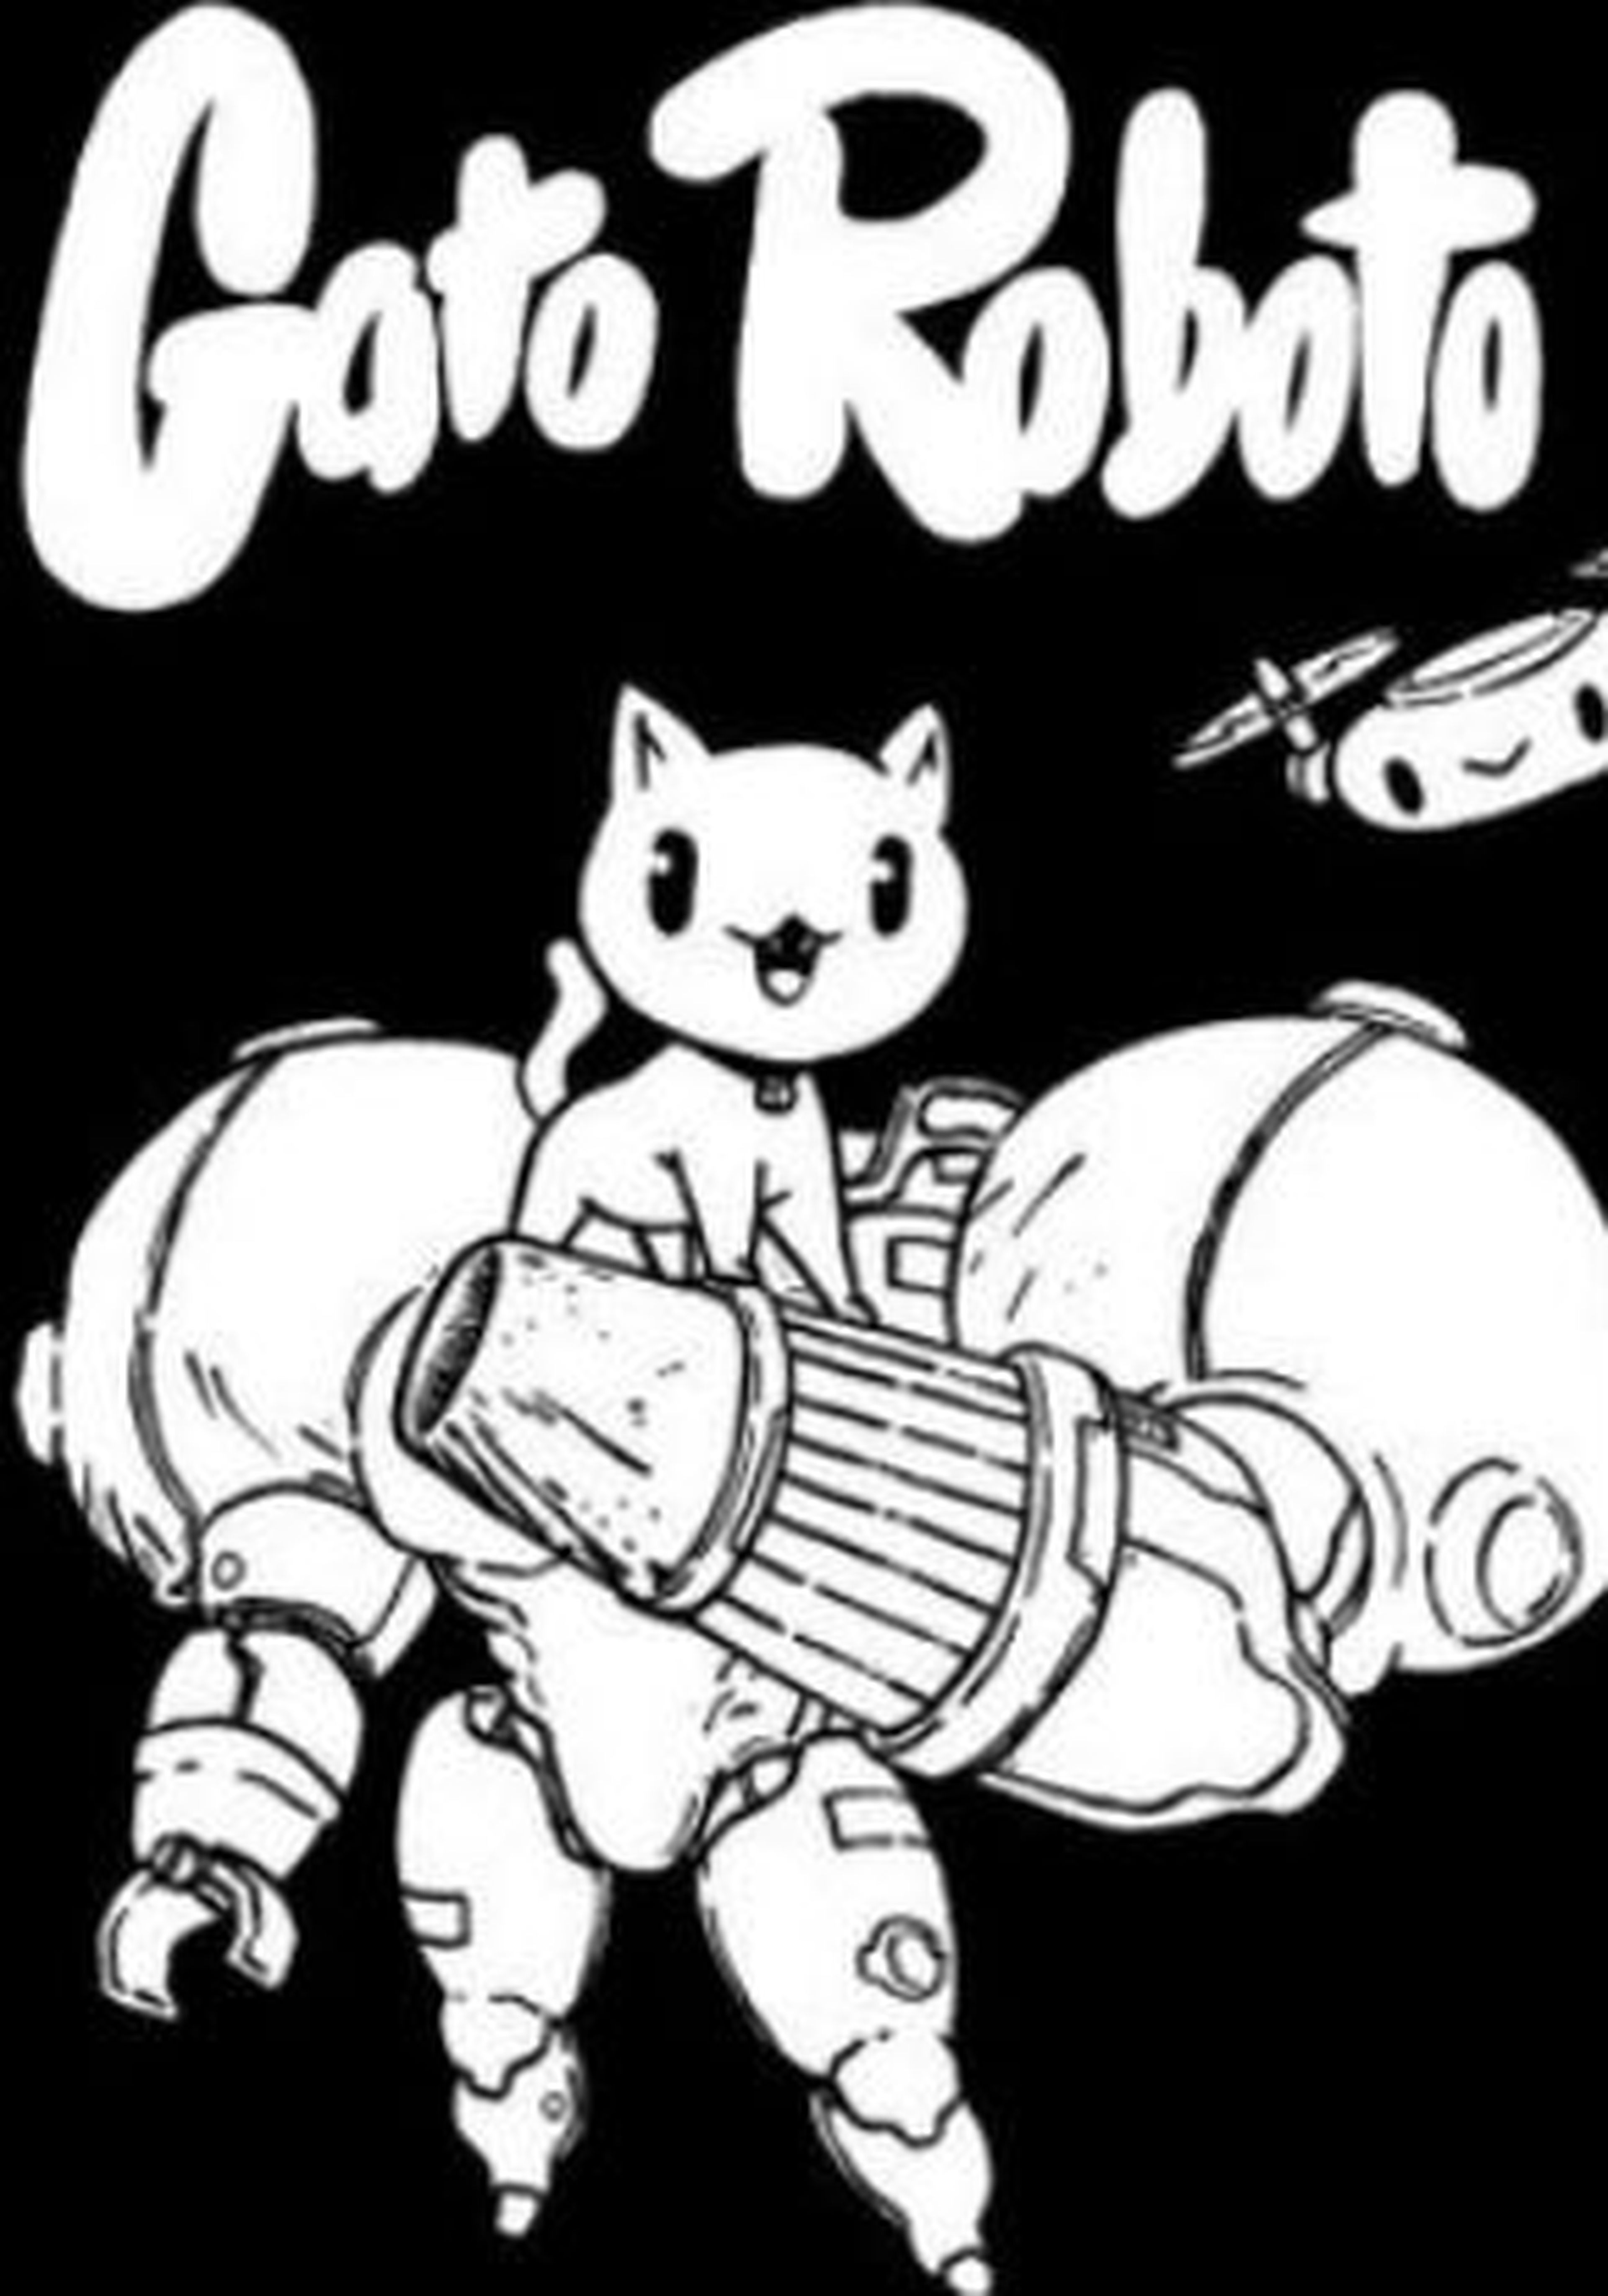 Análise: Gato Roboto (PC/Switch) é um divertido metroidvania com toque  felino - GameBlast